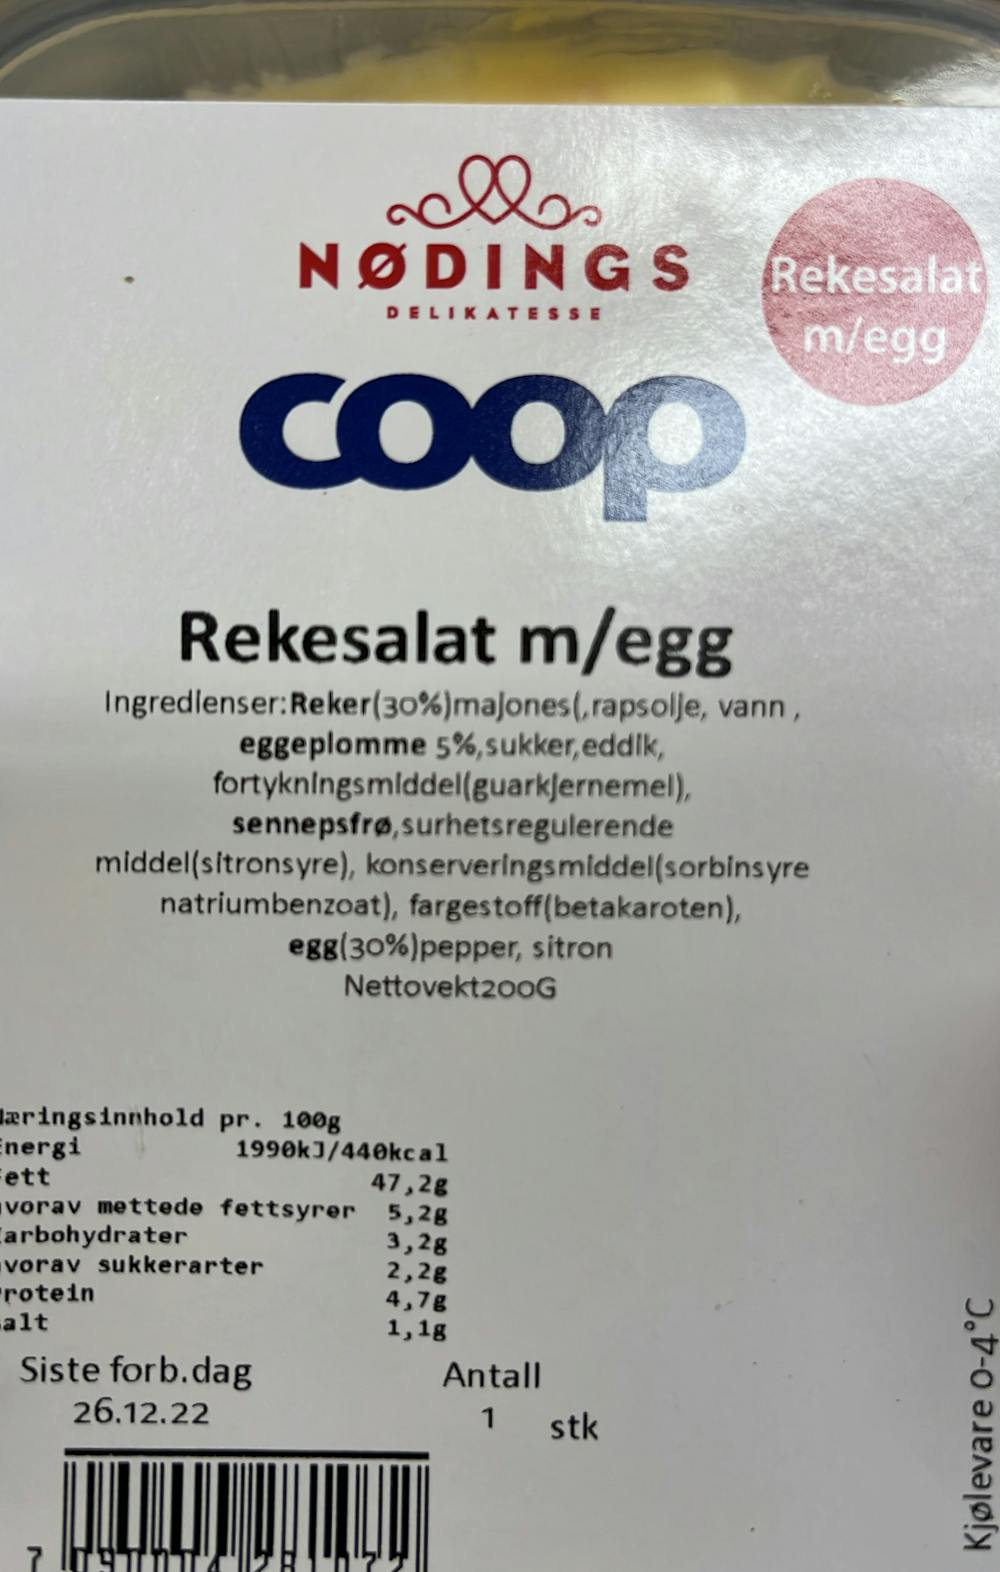 Ingredienslisten til Rekesalat m egg, Coop